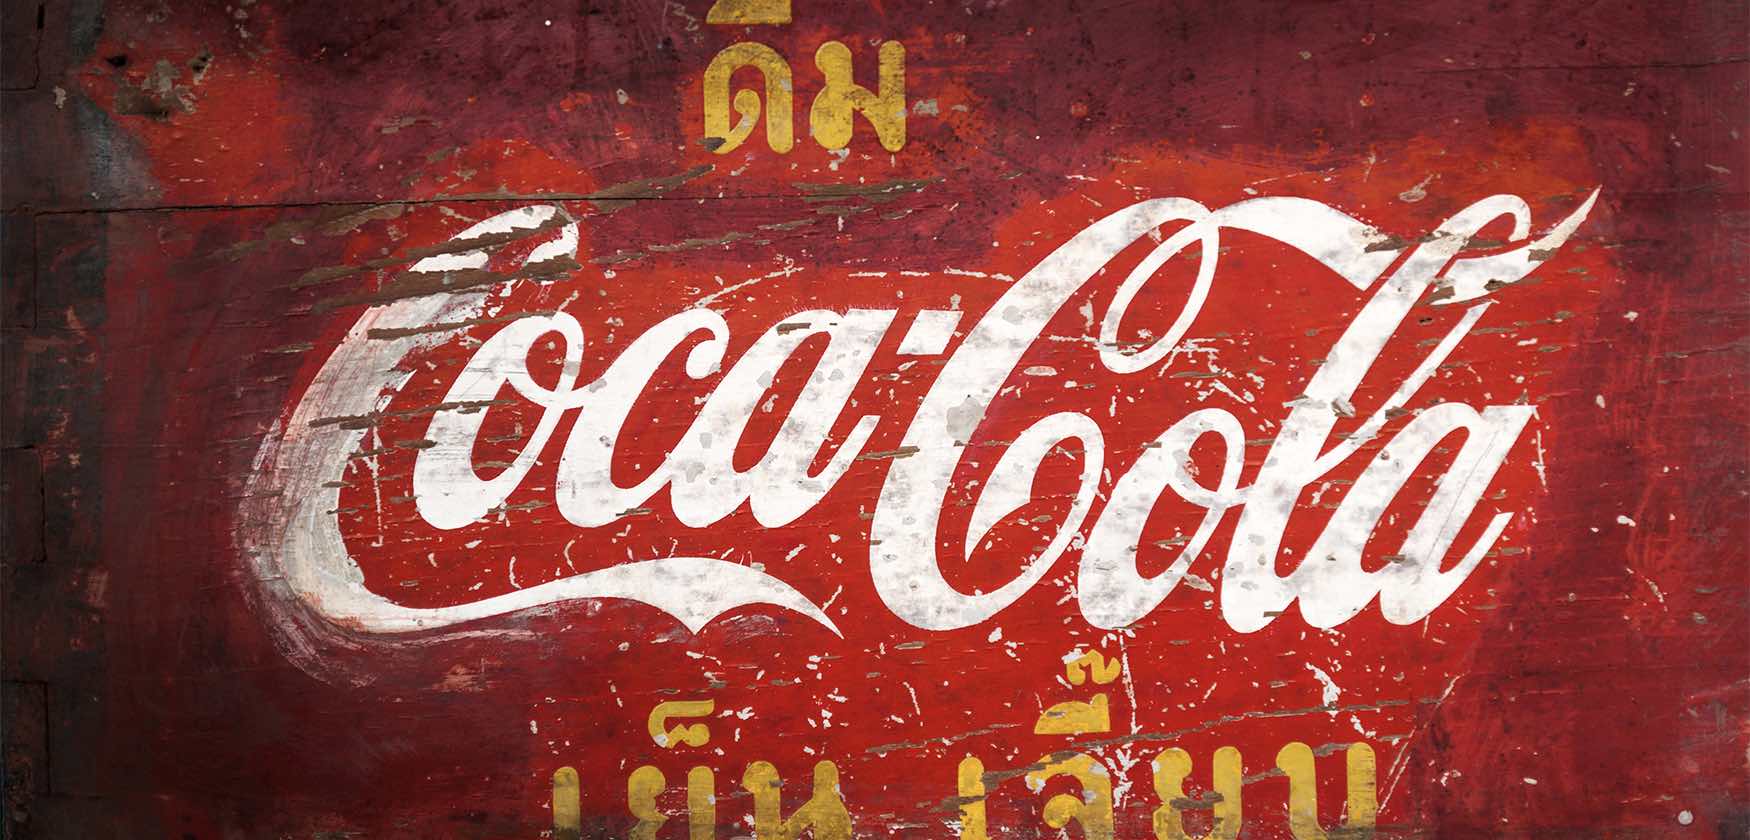 A close up of the coca cola logo